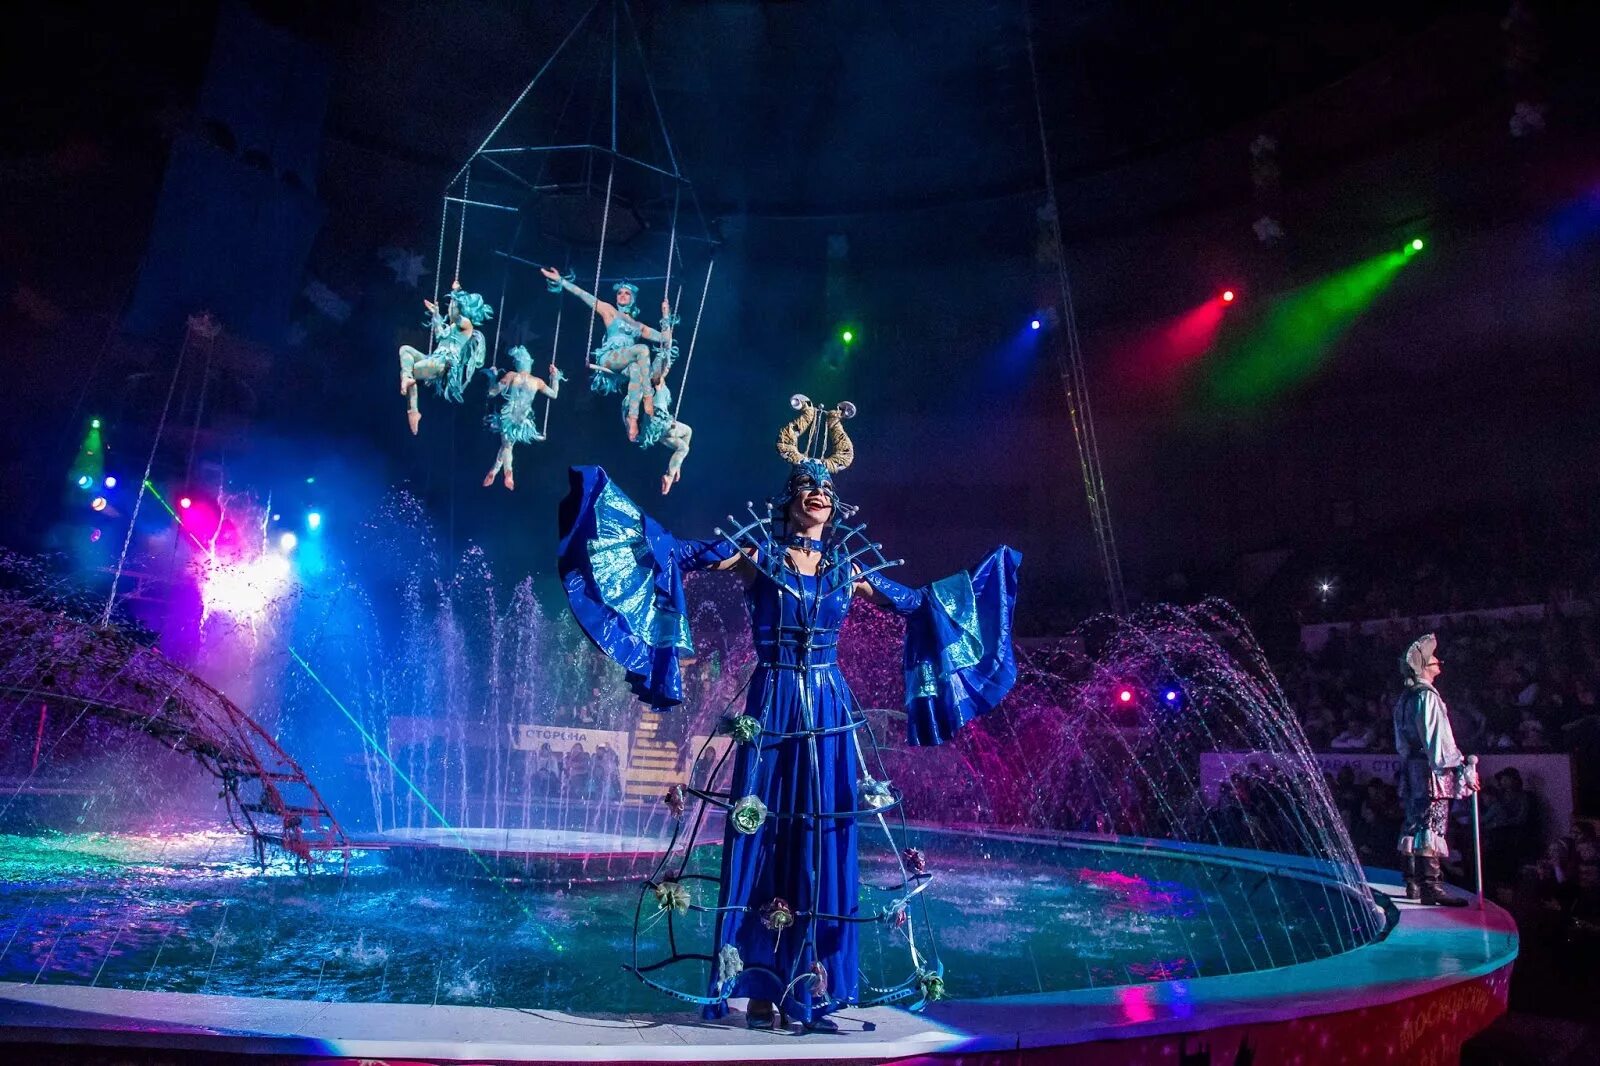 Цирк мистическое шоу на воде